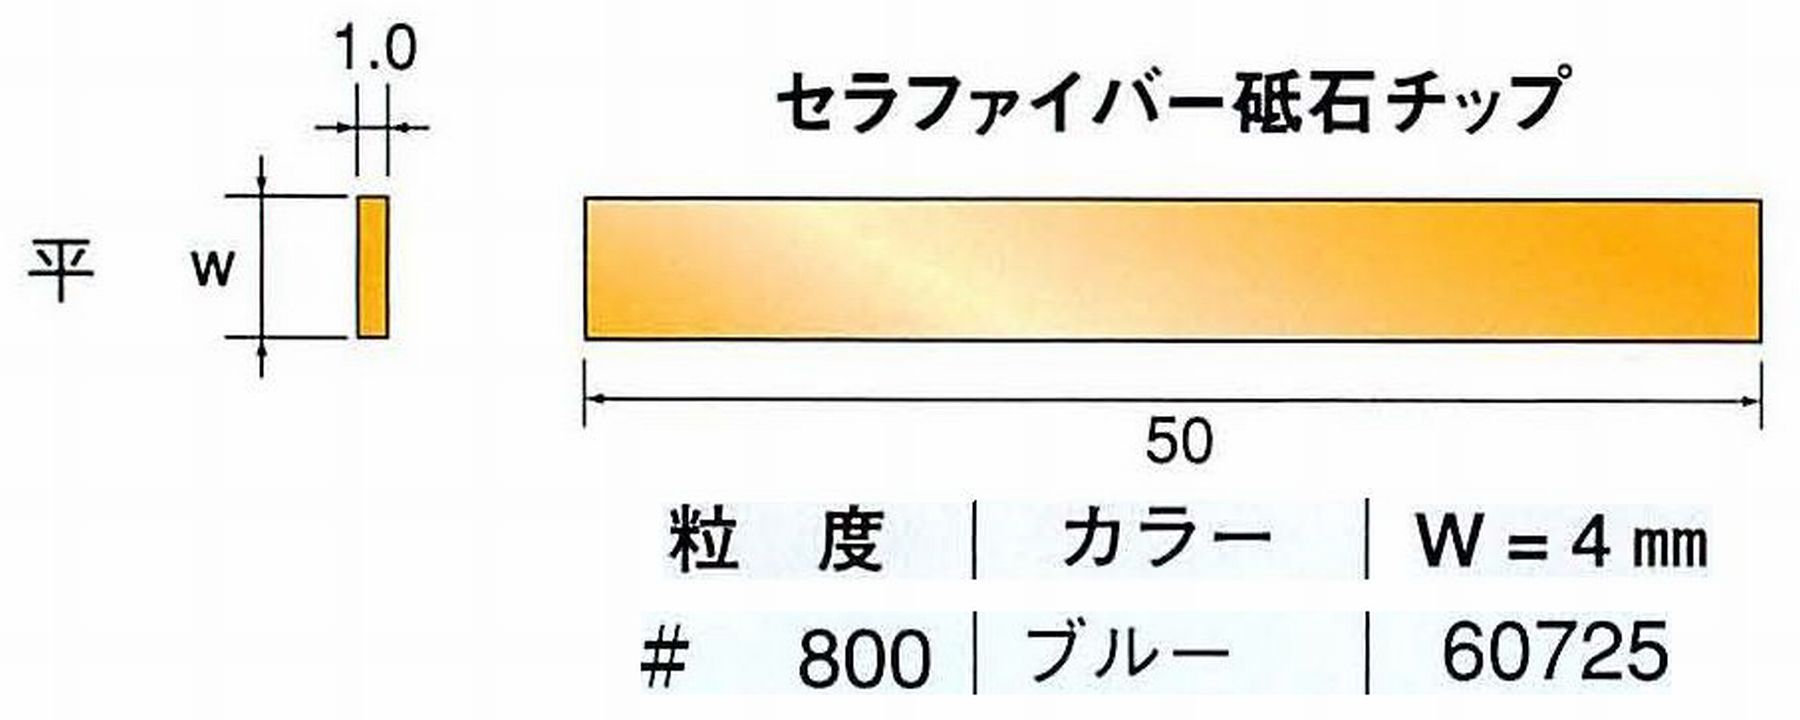 ナカニシ/NAKANISHI 超音波研磨装置 シーナスneo/シーナス専用工具 セラファイバー砥石チップ 平 60725